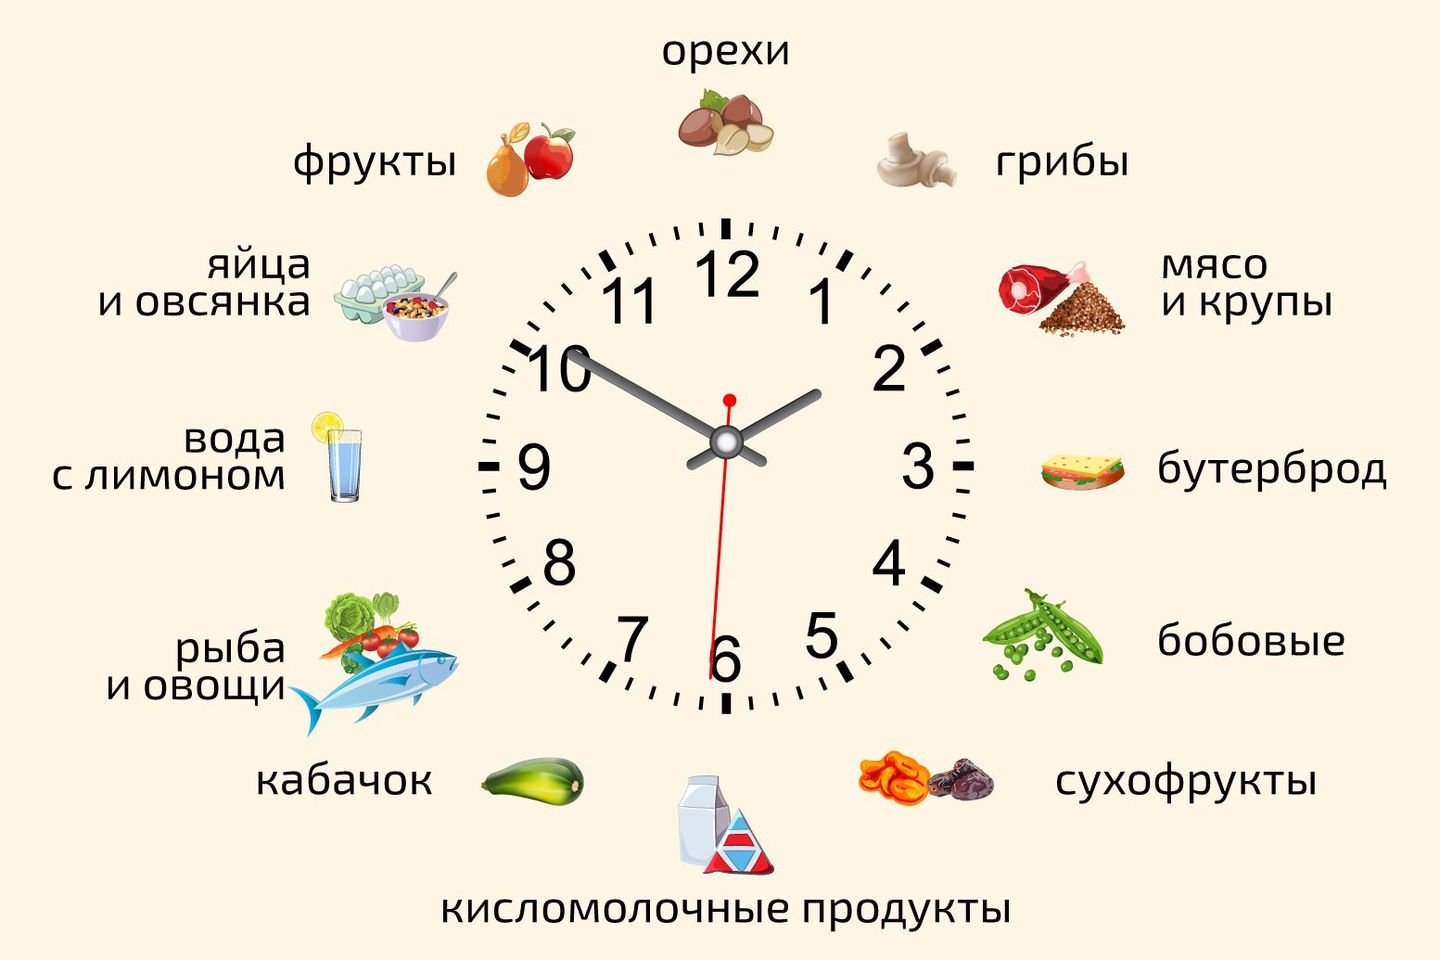 Во сколько часов можно кушать. Какие продукты в какое время есть. Какие продукты нужно есть в Разное время суток. Какие продукты есть в какое время суток. Какие продукты нужно употреблять в какое время суток.